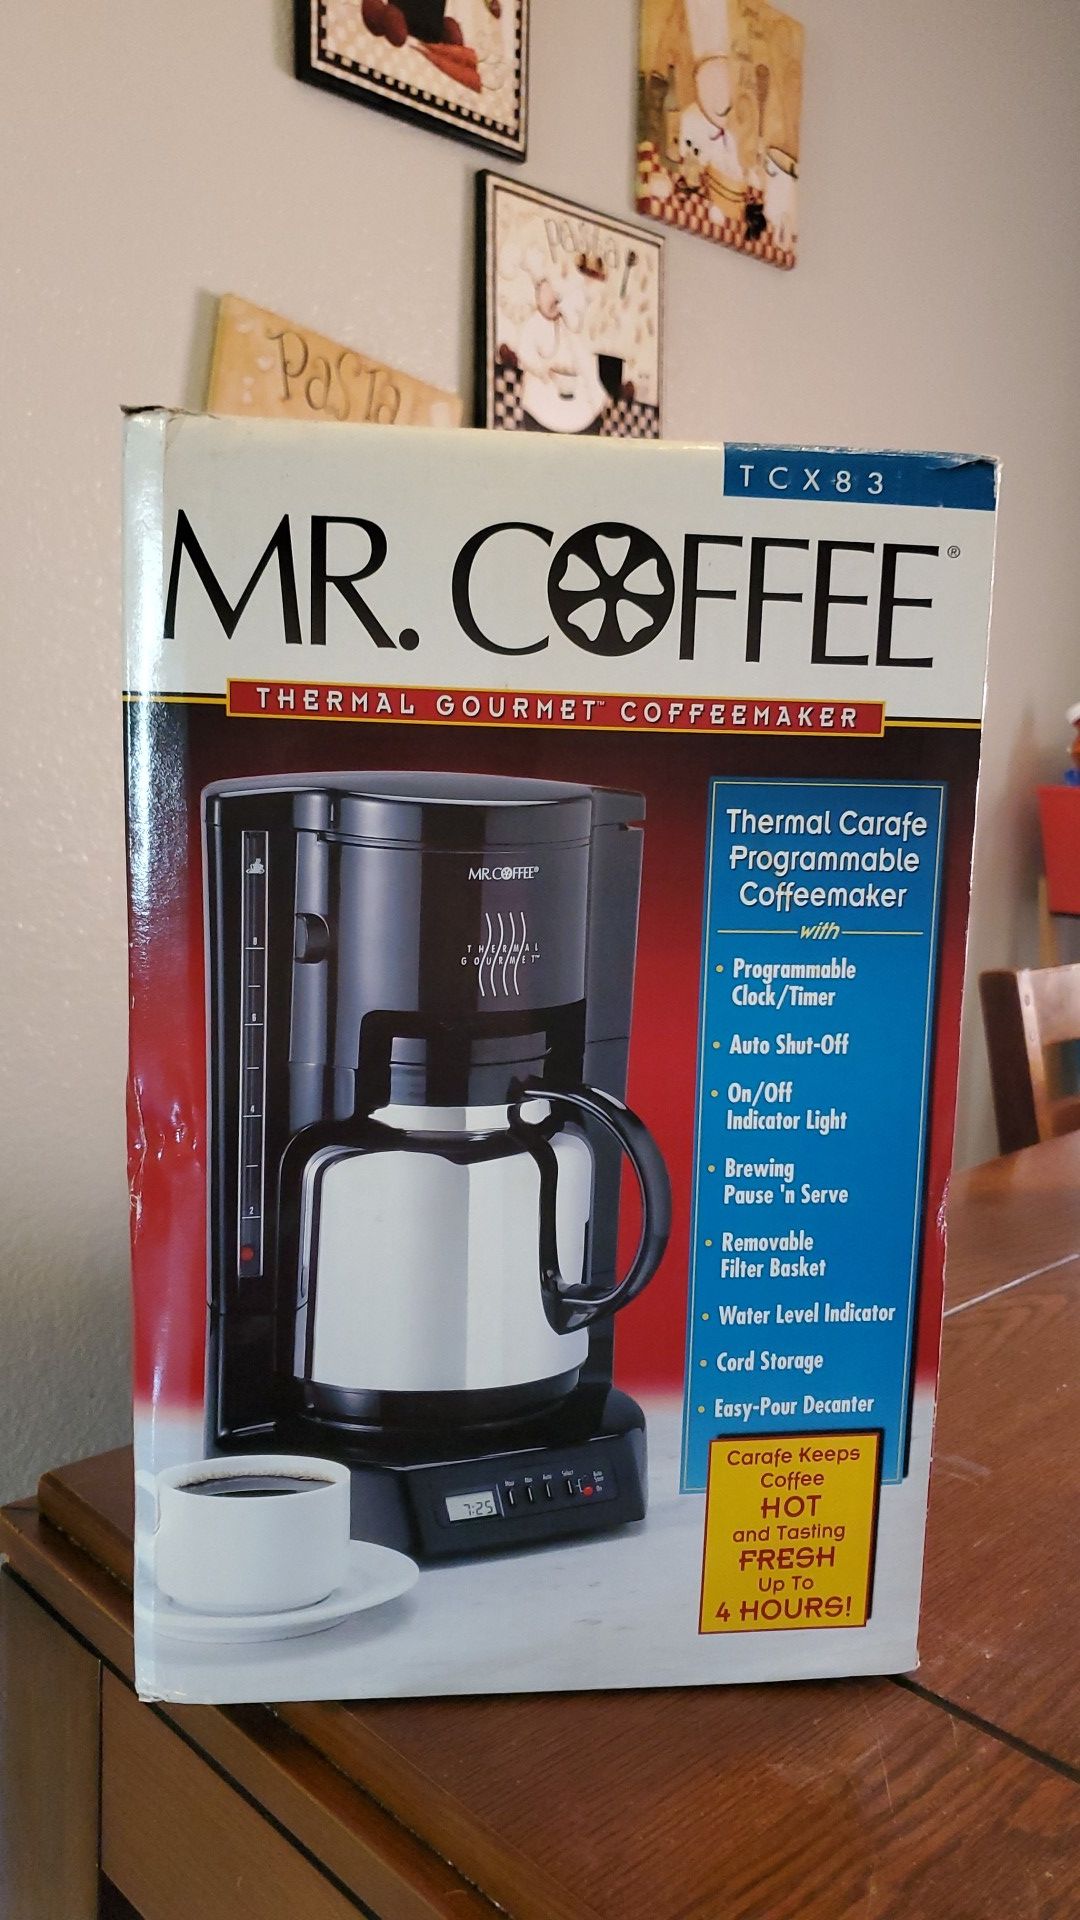 Mr. Coffee Thermal Gourmet Coffee Maker